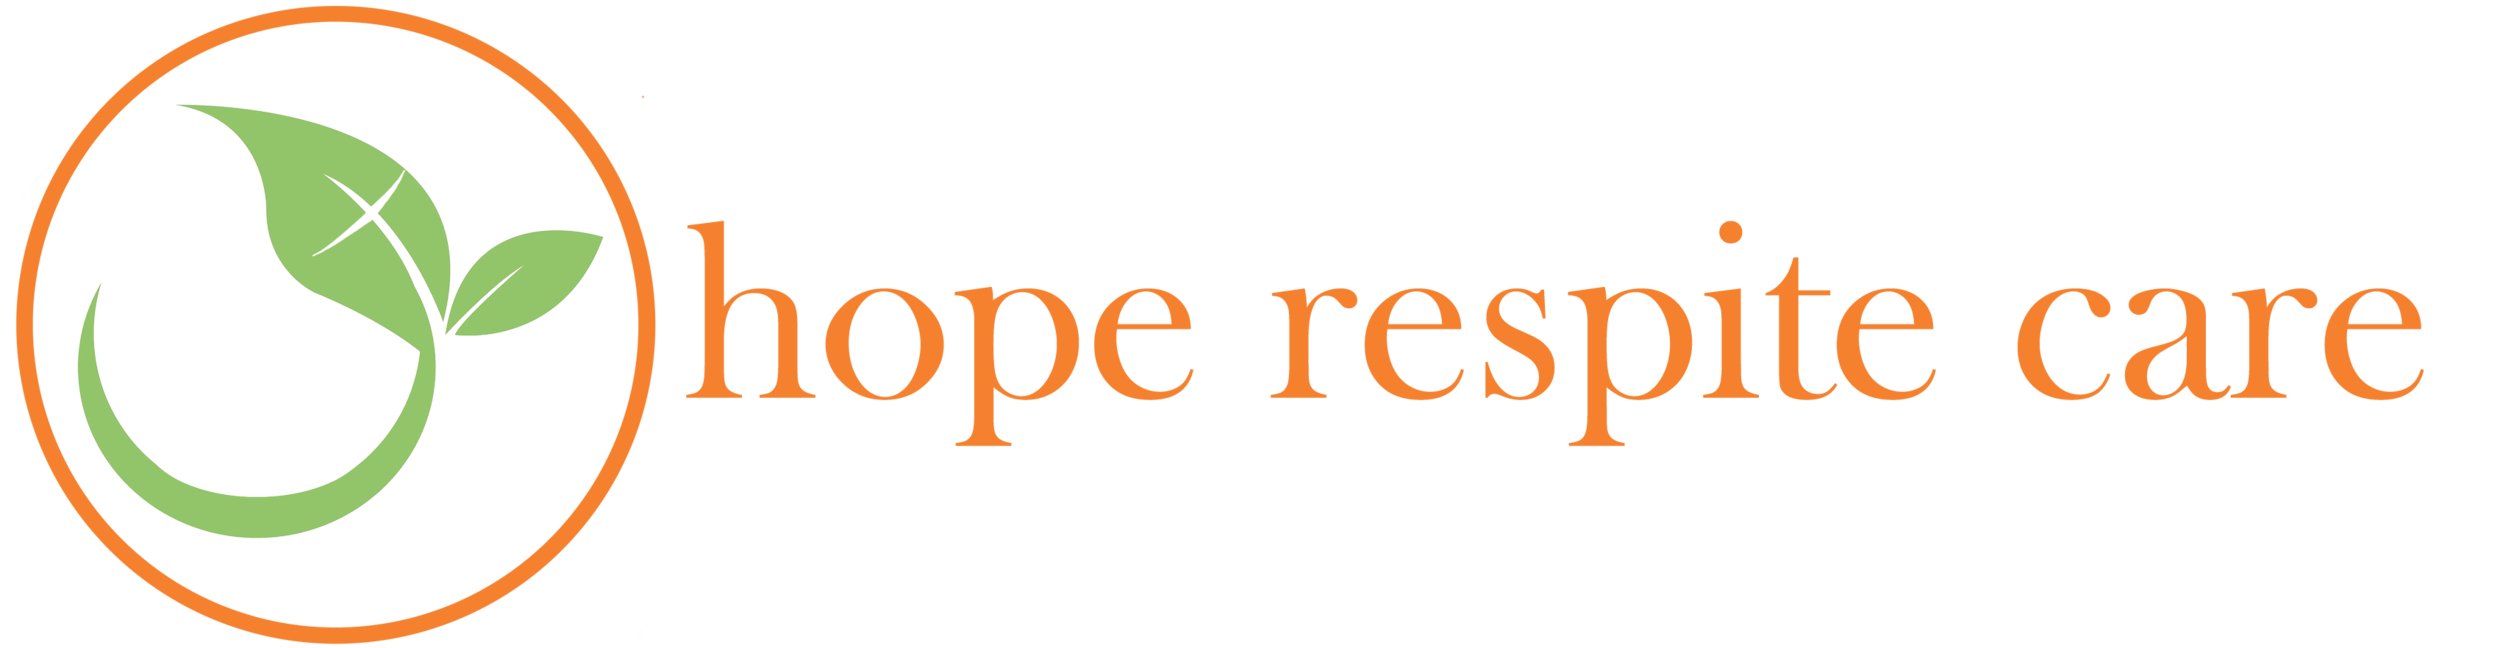 Hope Respite Care - words outside leaf logo.png